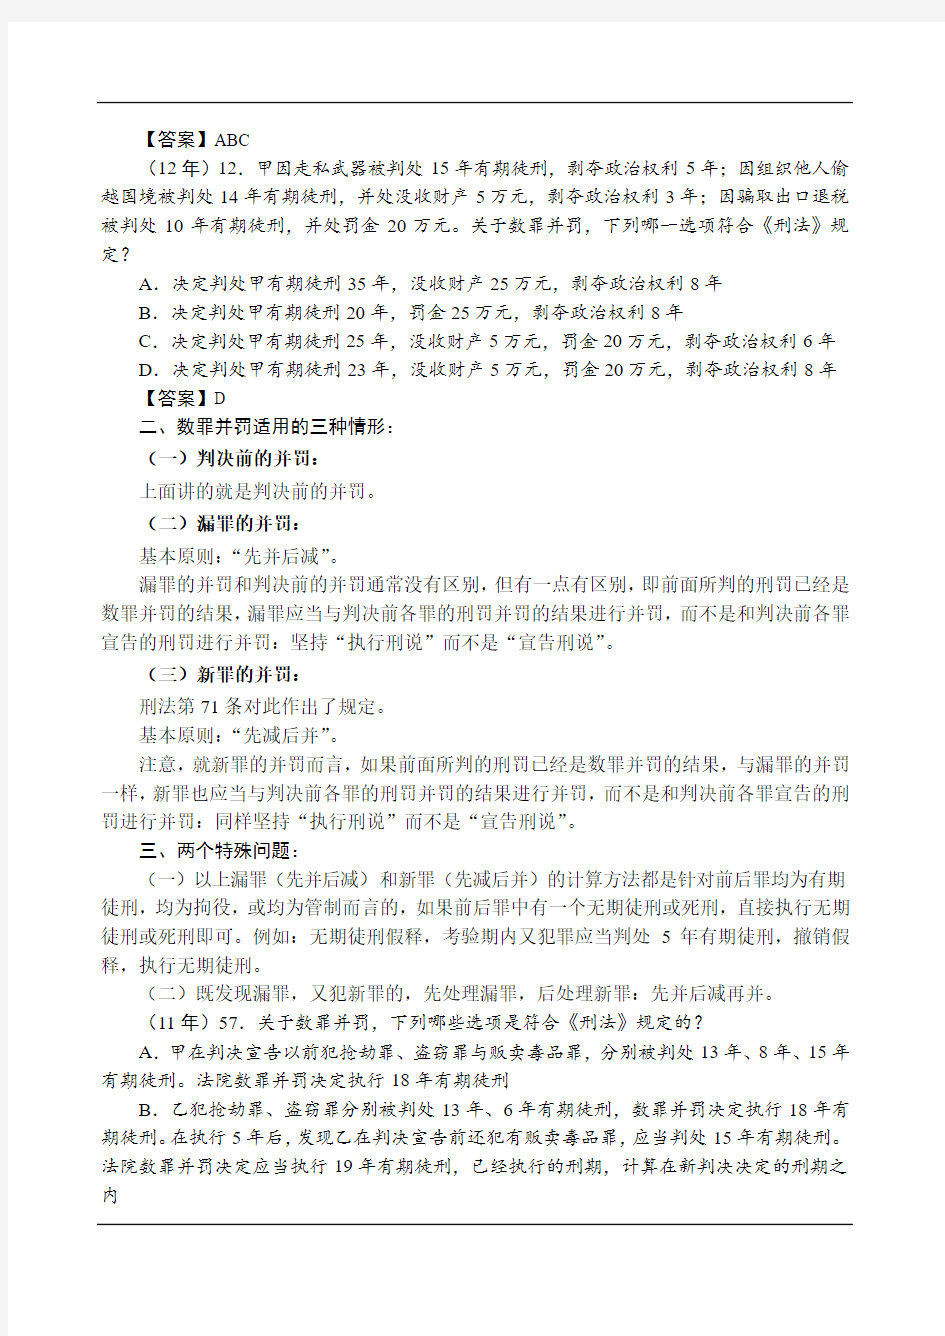 2019强化讲义刑法-第19节-数罪并罚 缓刑 减刑 假释 -陈永生